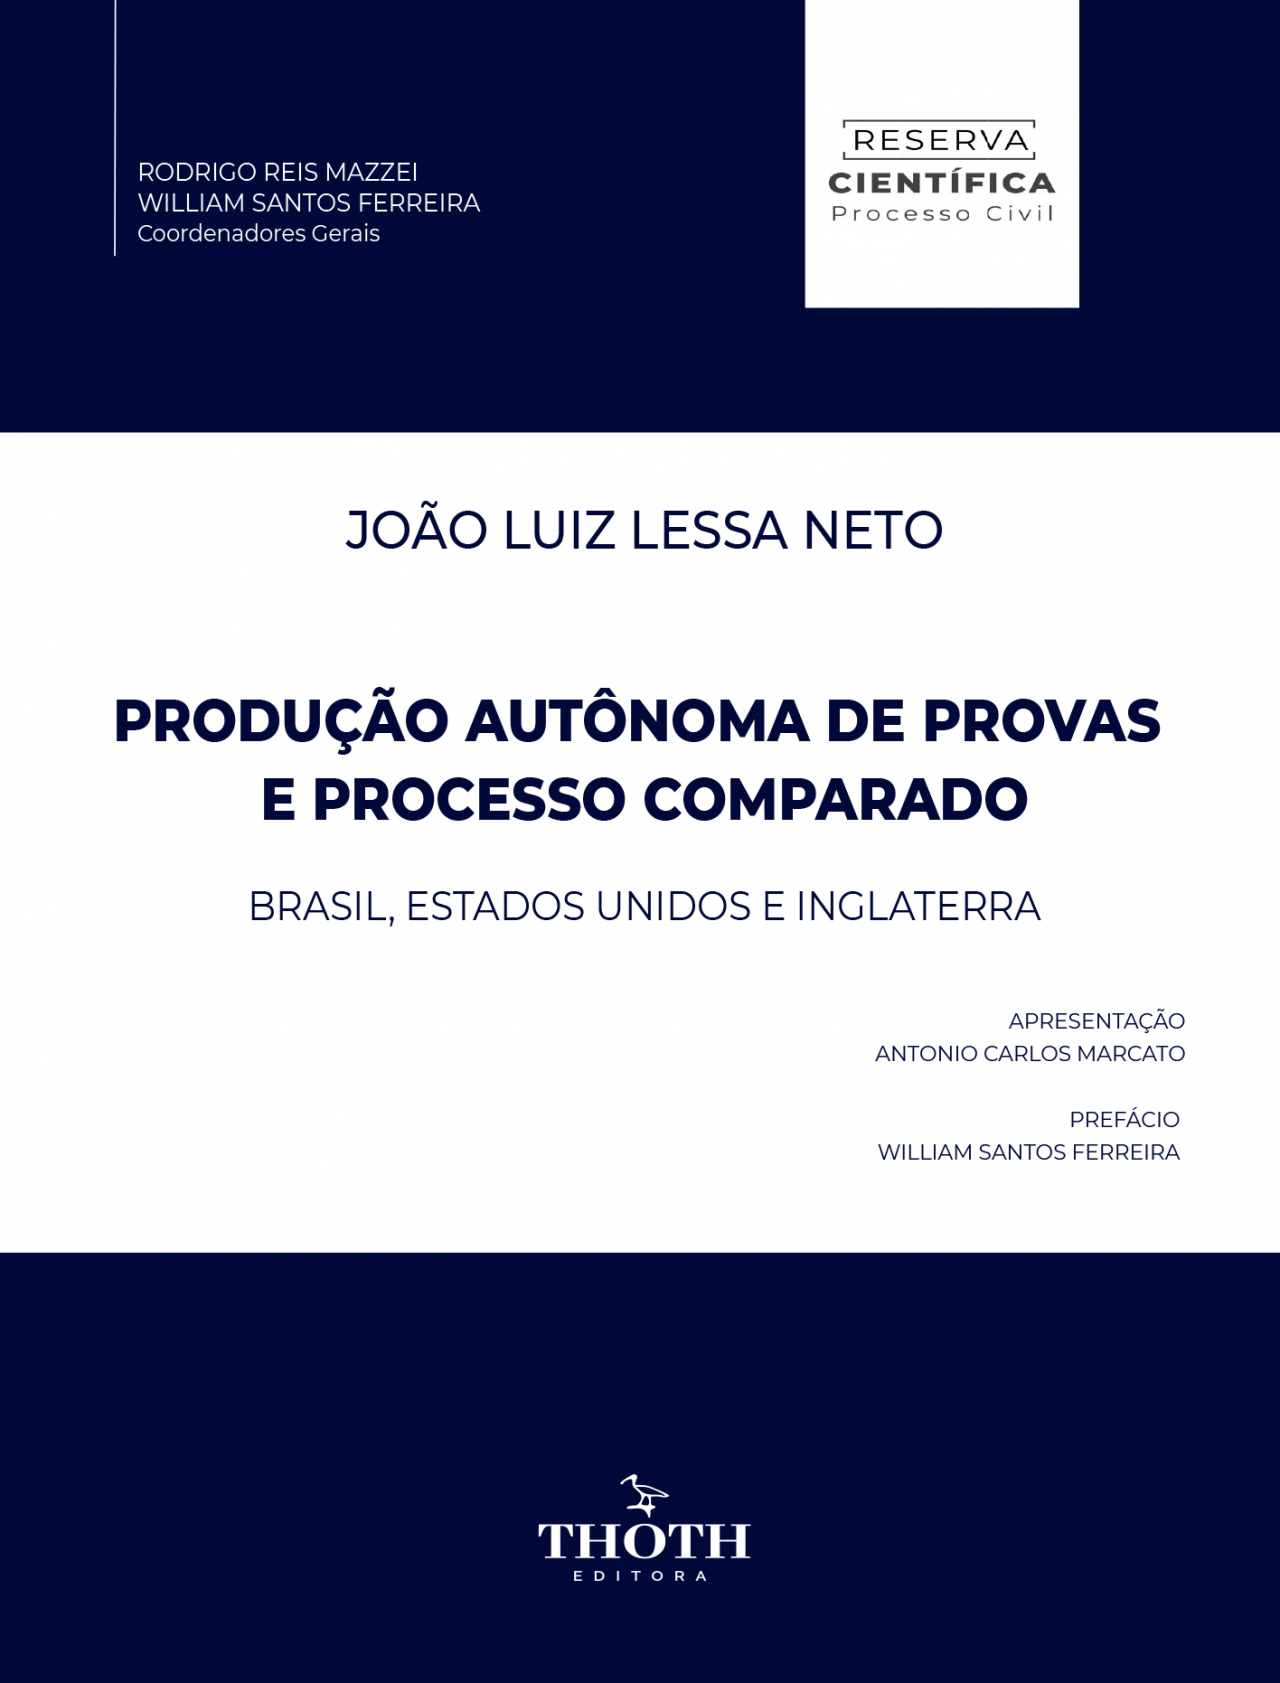 Rodrigo Franco - Universidade Federal de Minas Gerais - Belo Horizonte,  Minas Gerais, Brasil